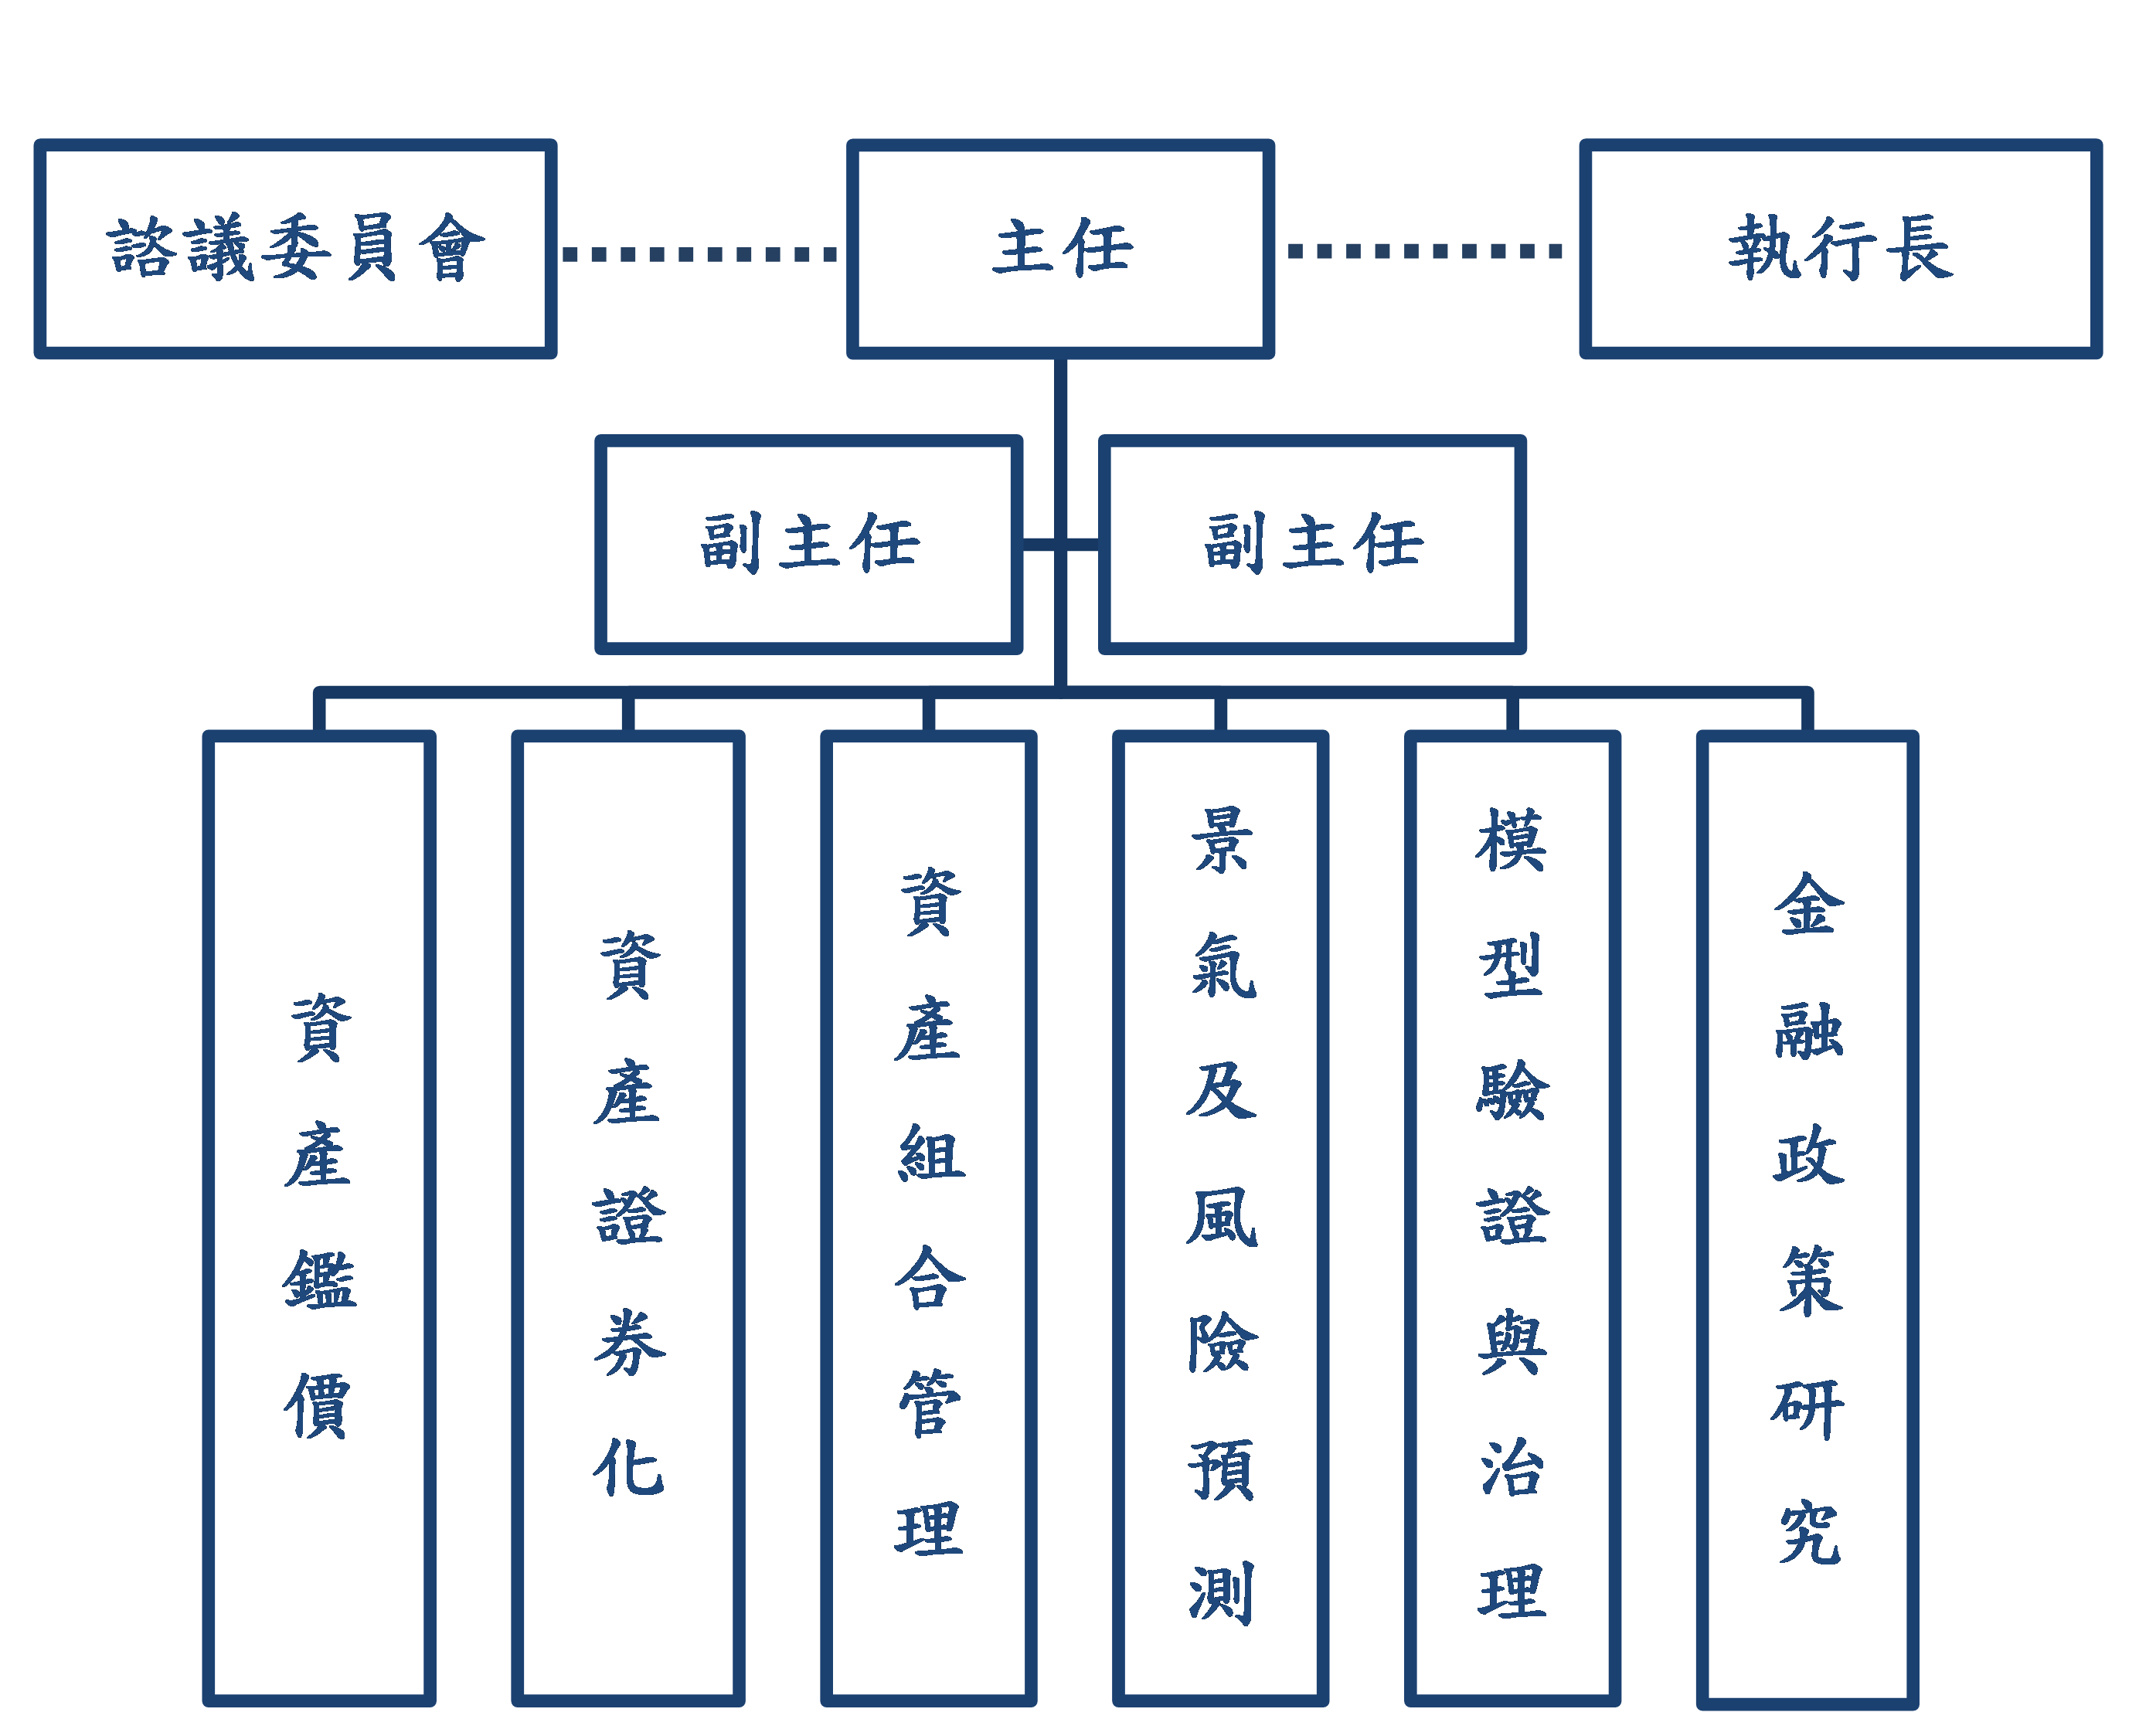 The framework of the AIFE